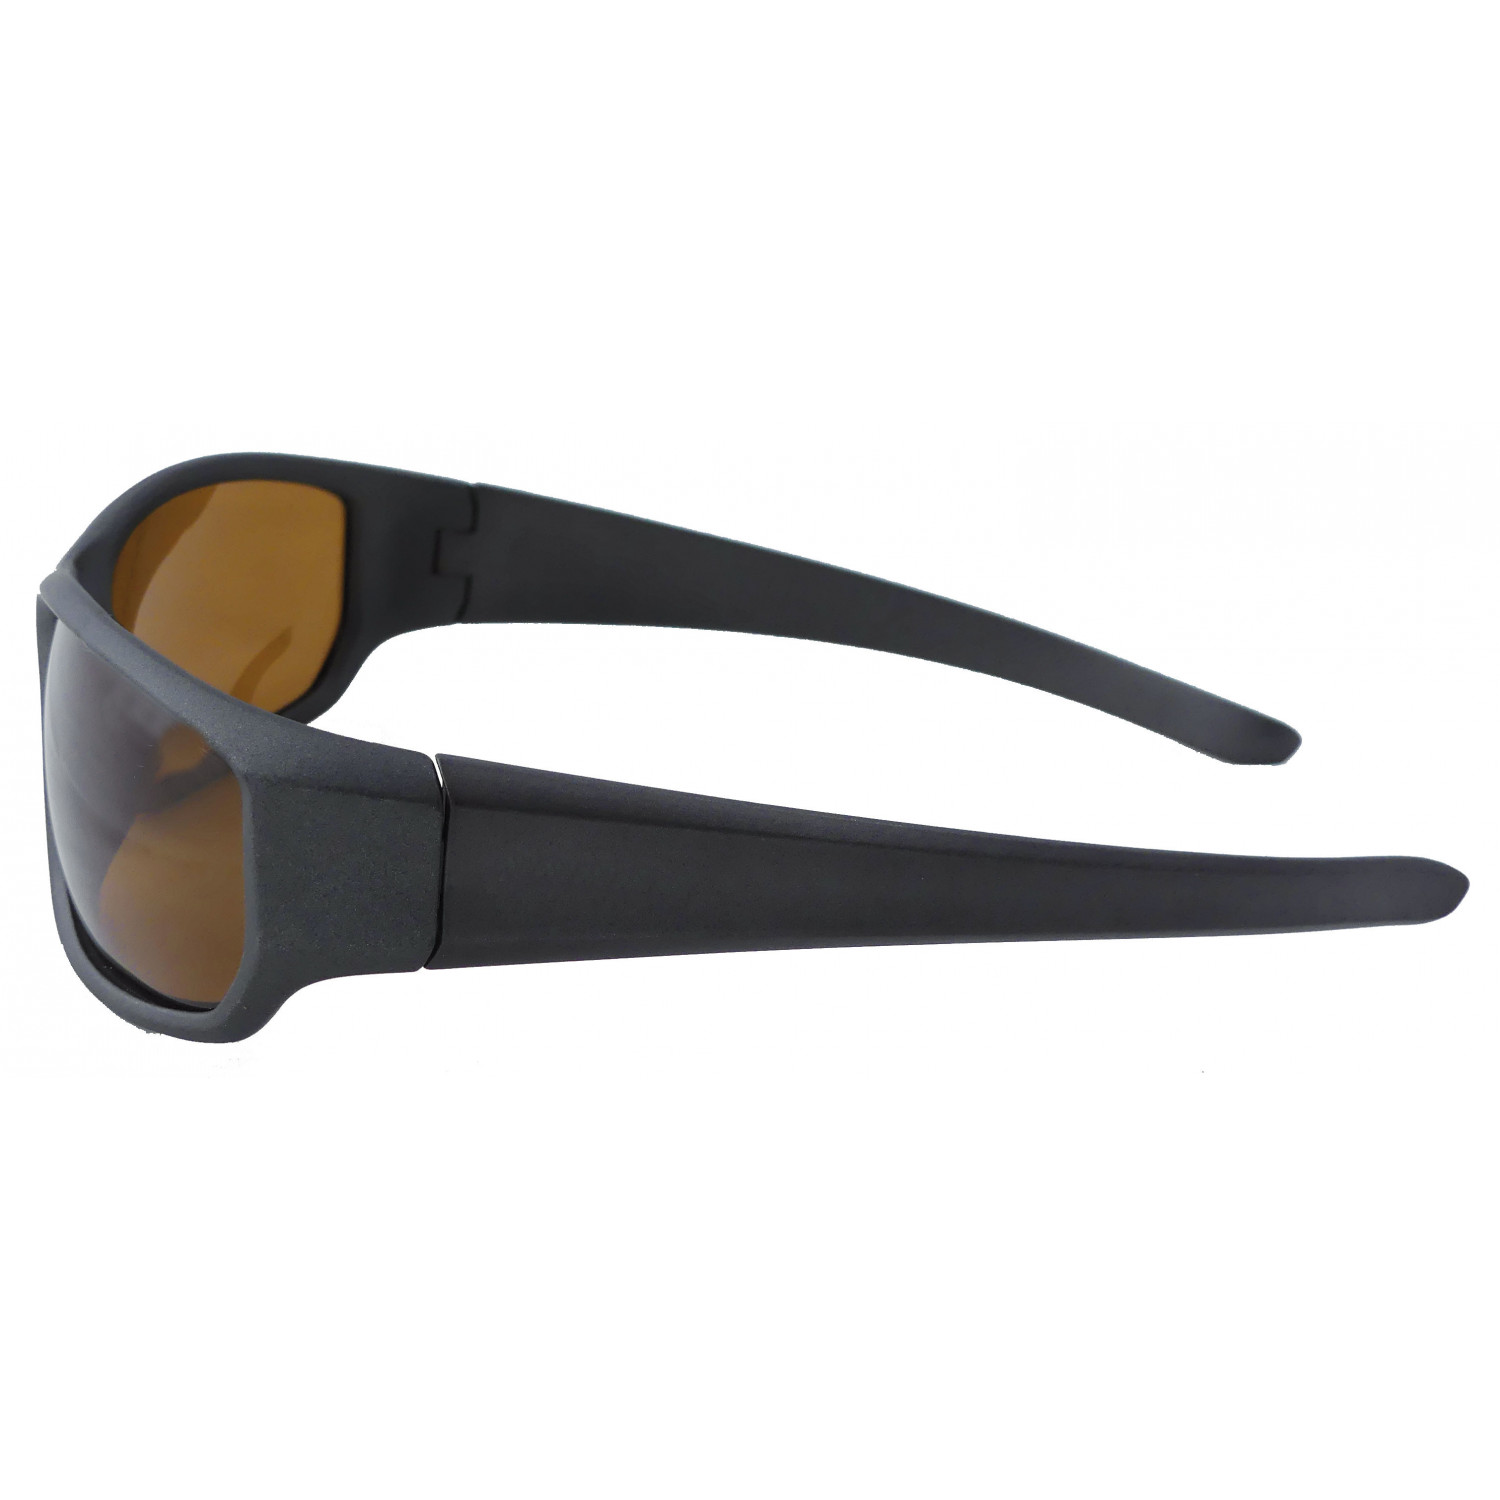 Gläsern mit schwarz braunen Suxxes Polarisationsbrille